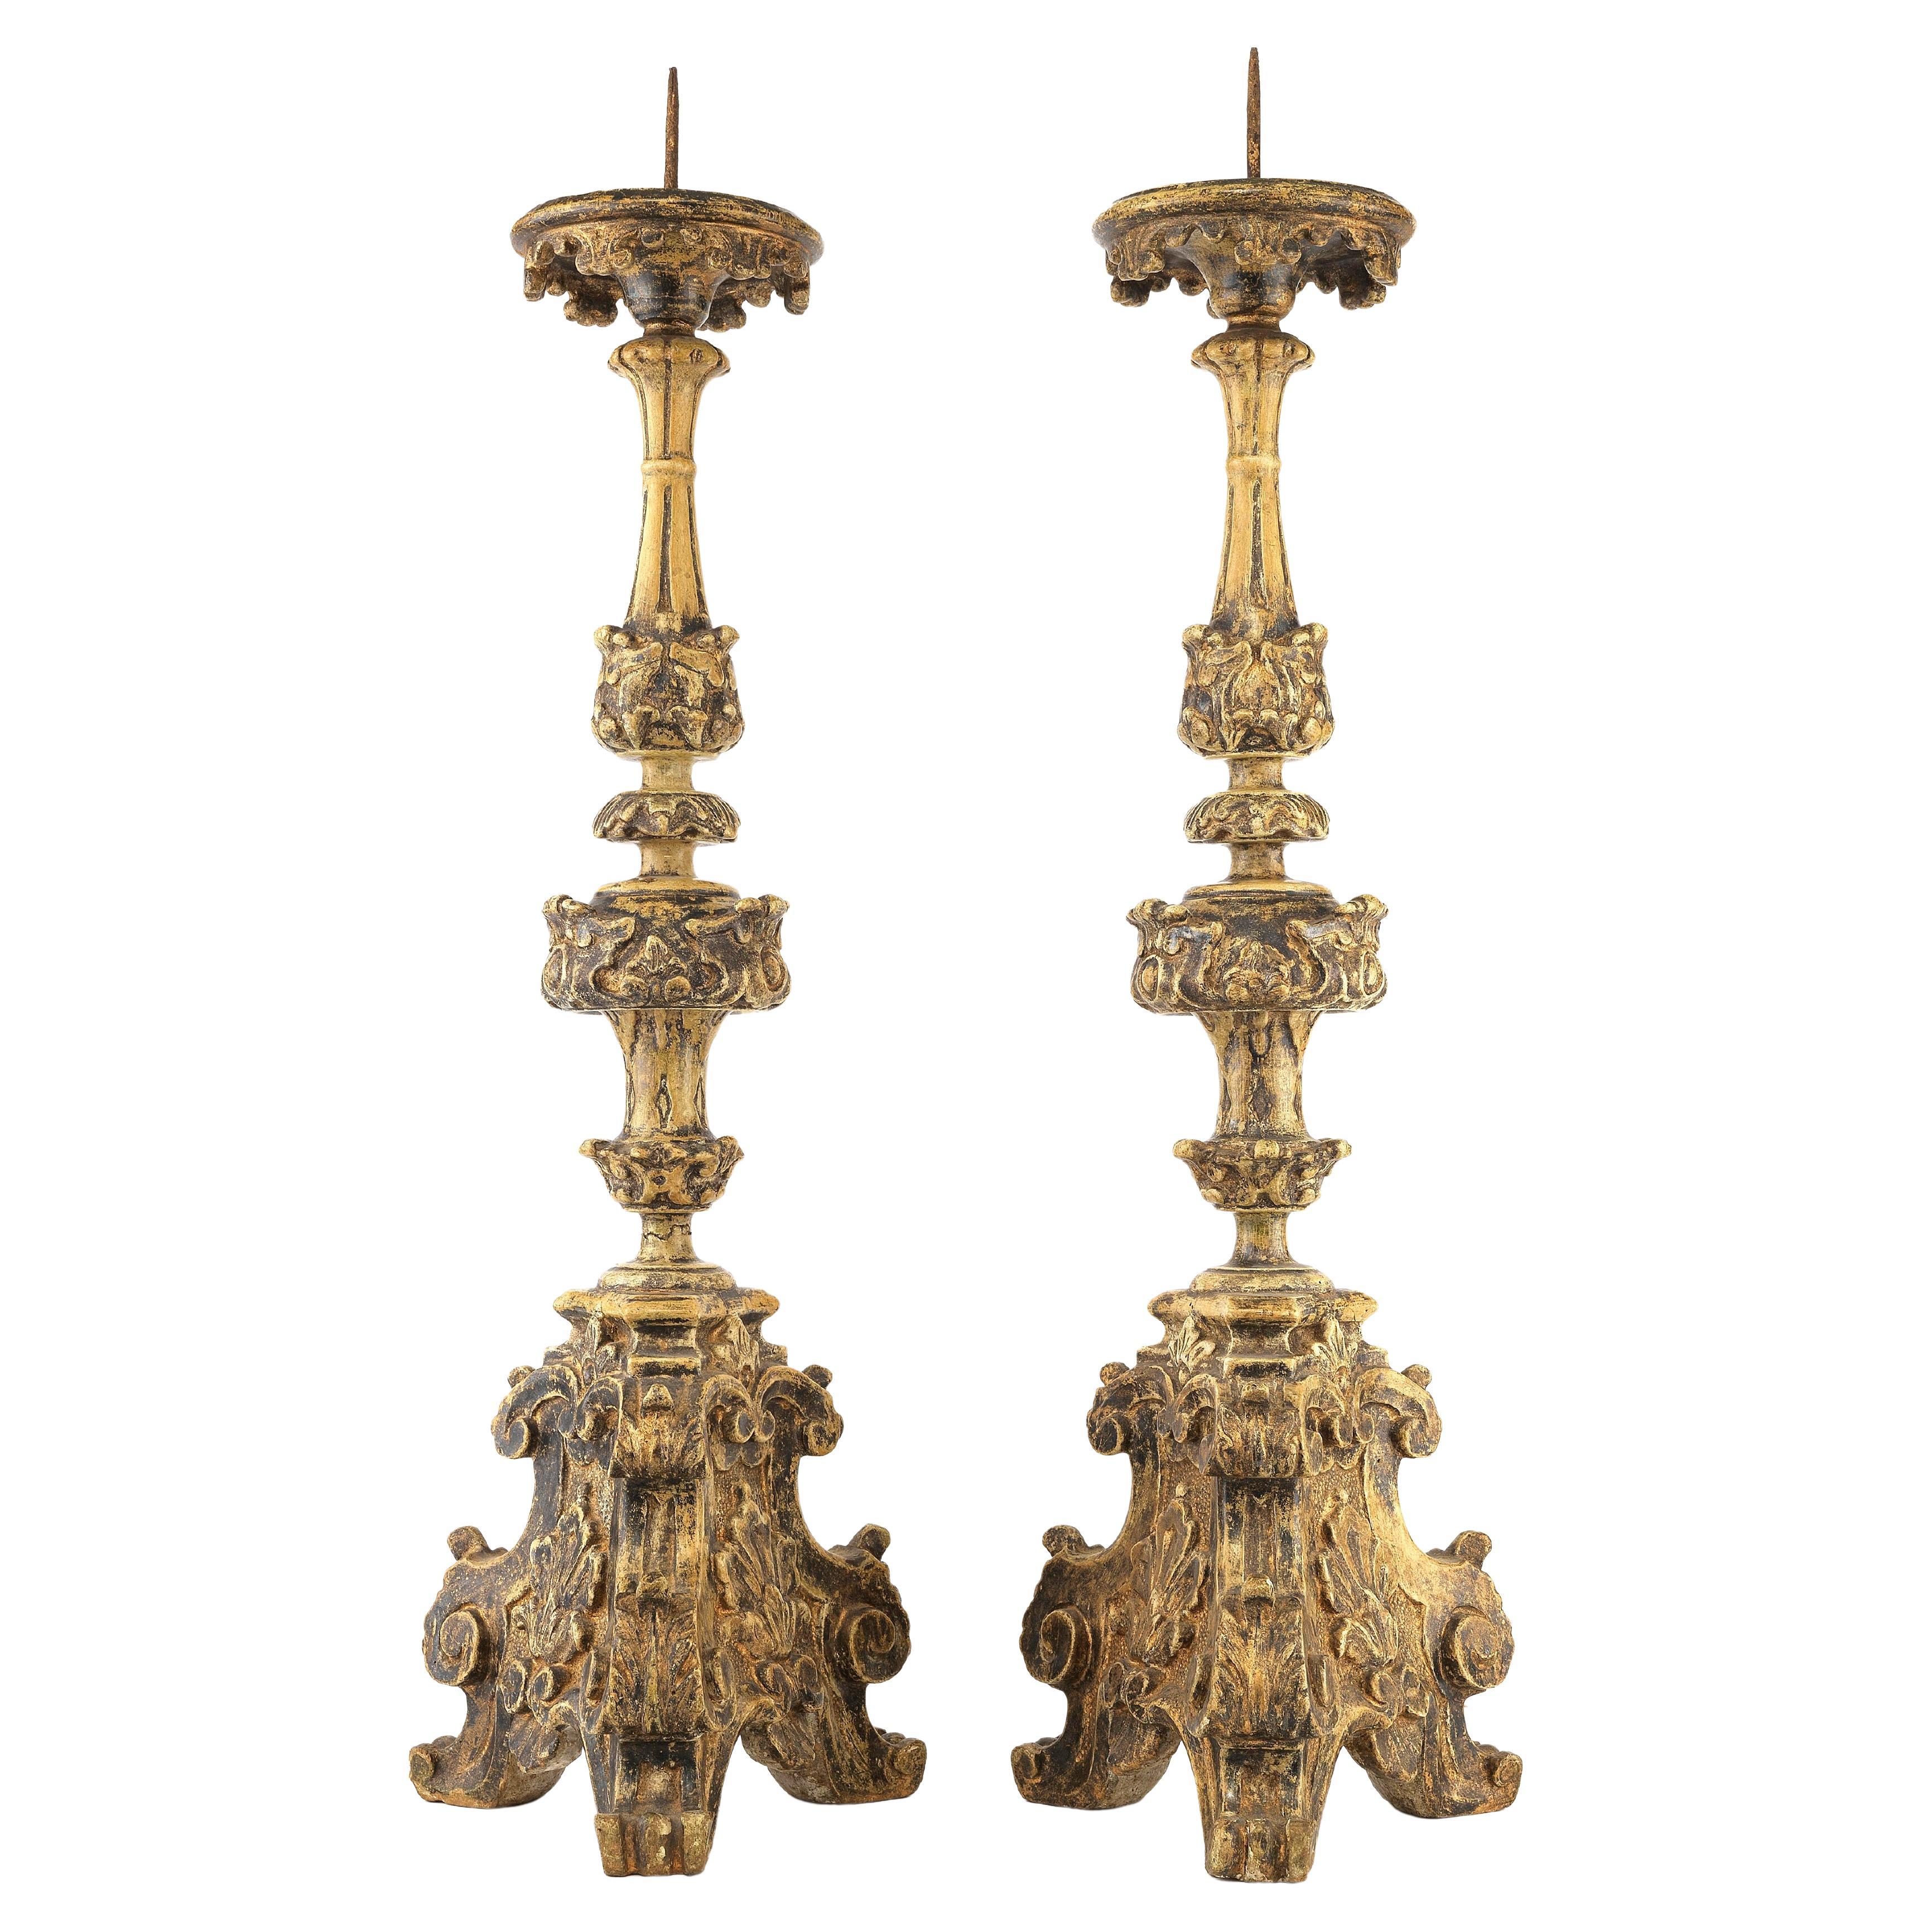 Paire de chandeliers italiens en plâtre et Wood Wood du début du 18e siècle